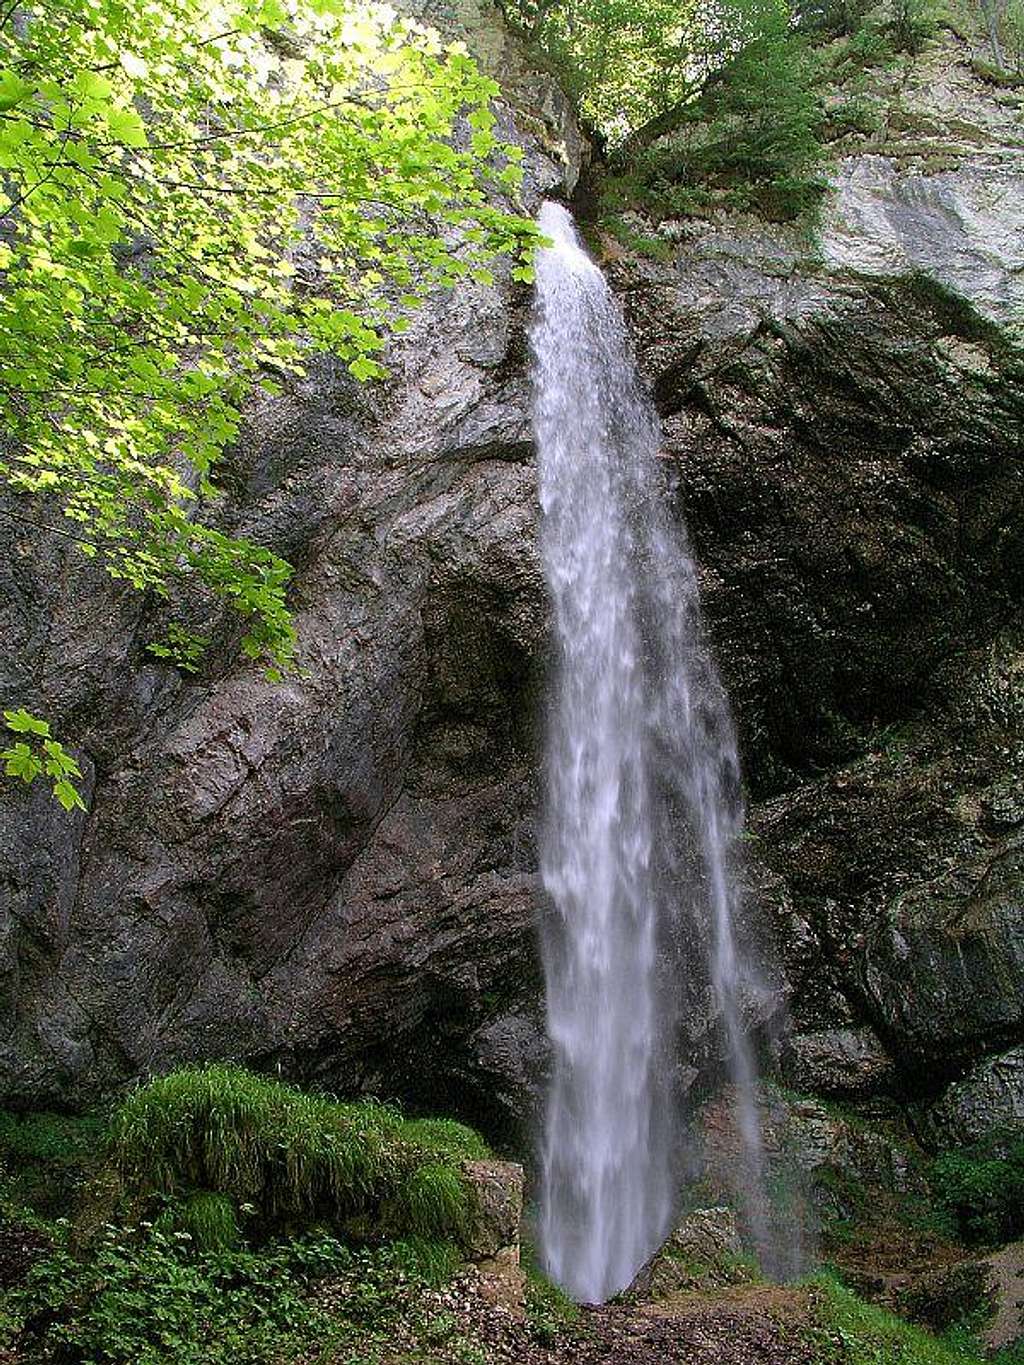 Wildenstein waterfall